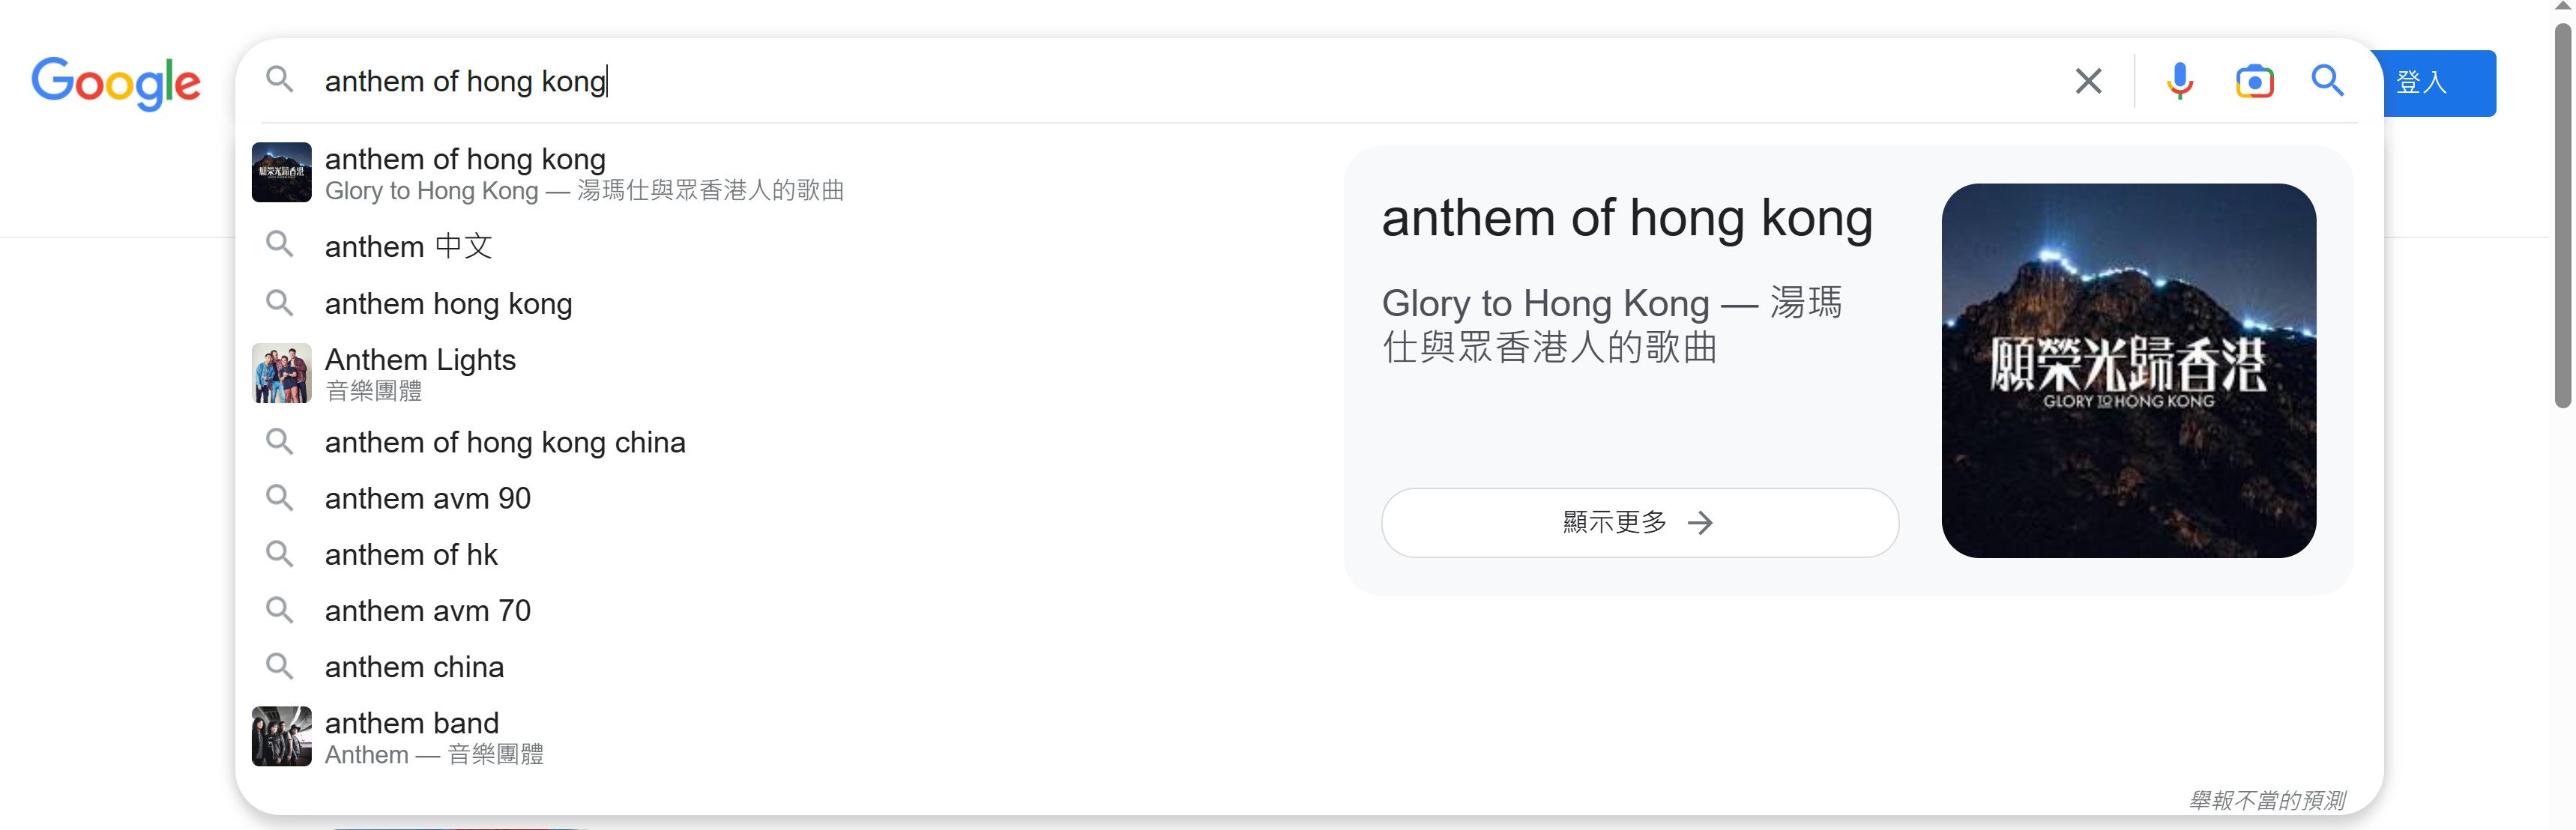 沒開vpn，在Goolge搜尋欄輸入「anthem of Hong Kong」，首個推薦仍是《Glory to Hong Kong》。（網頁截圖）